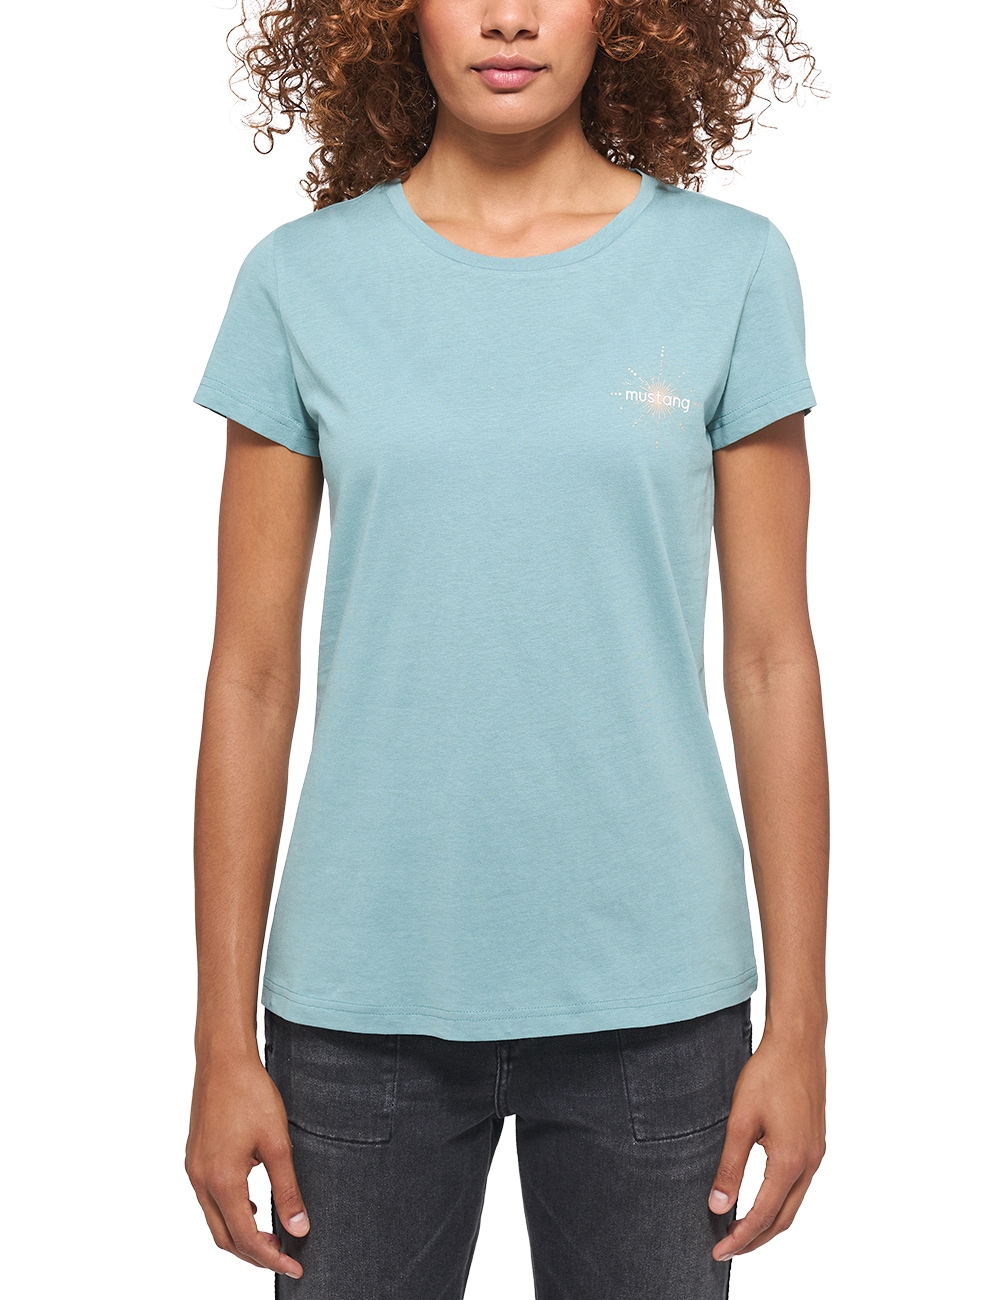 Alexia online Chestprint« C »Style MUSTANG T-Shirt OTTO bestellen bei